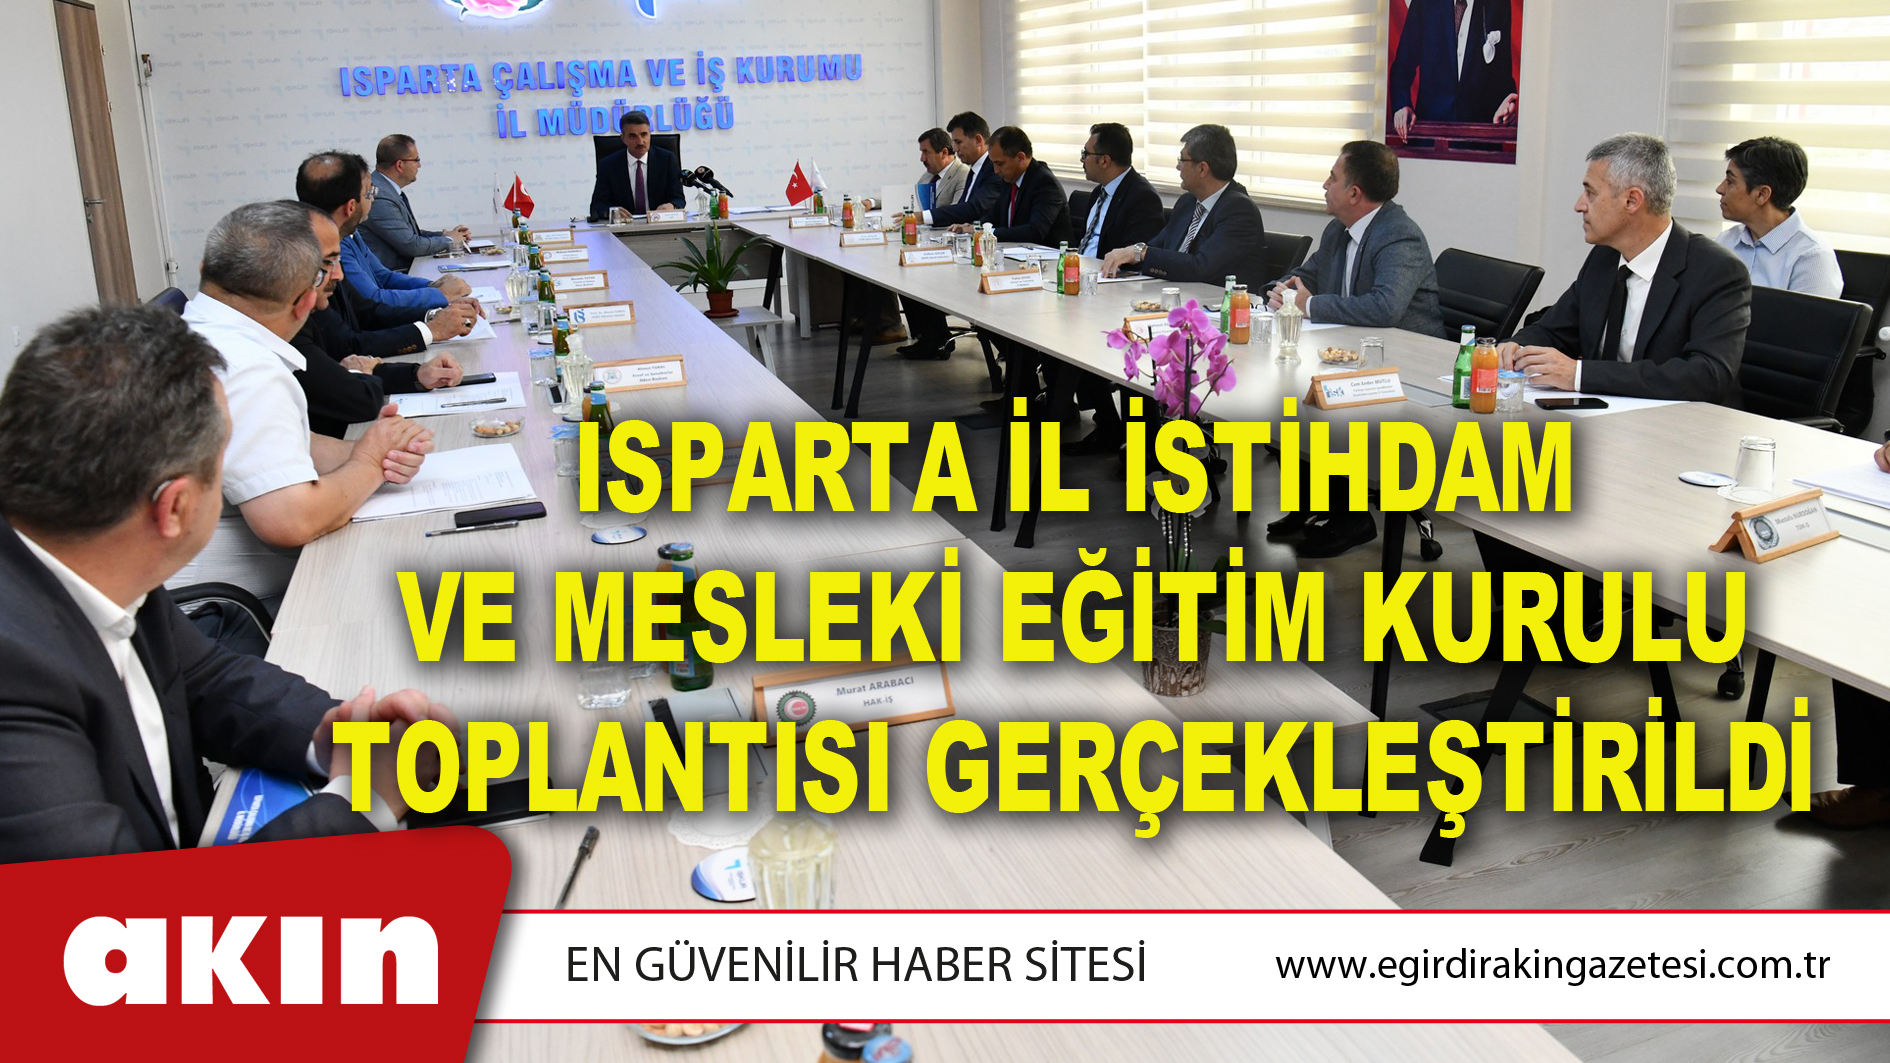 Isparta İl İstihdam Ve Mesleki Eğitim Kurulu Toplantısı Gerçekleştirildi.